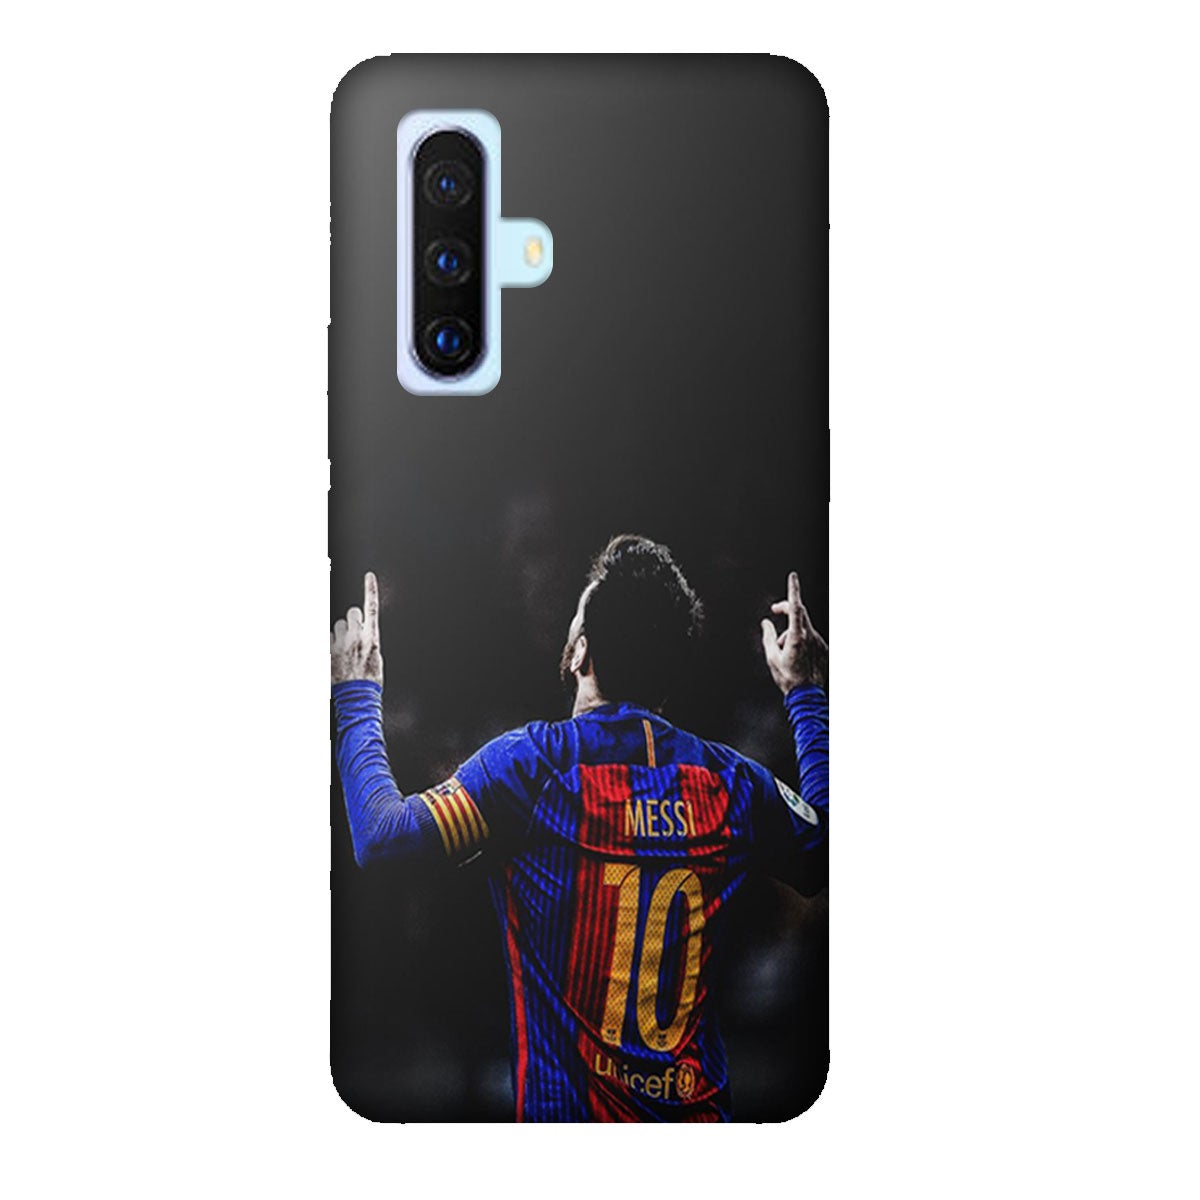 Lionel Messi Barcelona - Mobile Phone Cover - Hard Case - Vivo